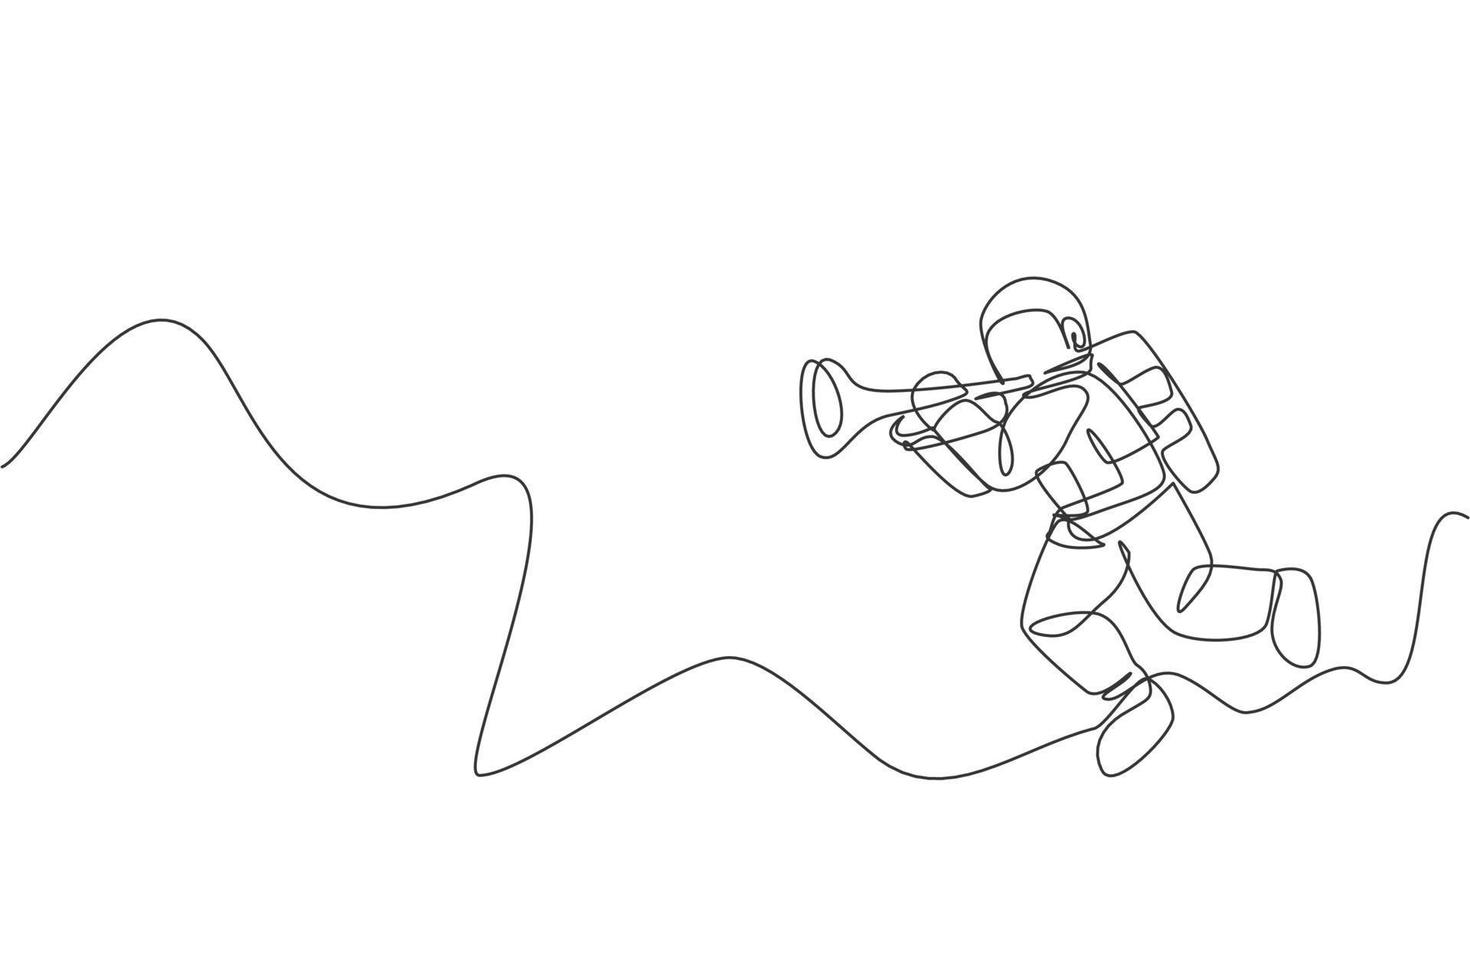 un disegno a tratteggio continuo dell'astronauta con la tuta spaziale che suona la tromba nell'universo della galassia. concerto di musica nello spazio esterno e concetto di orchestra. illustrazione grafica vettoriale di disegno dinamico a linea singola